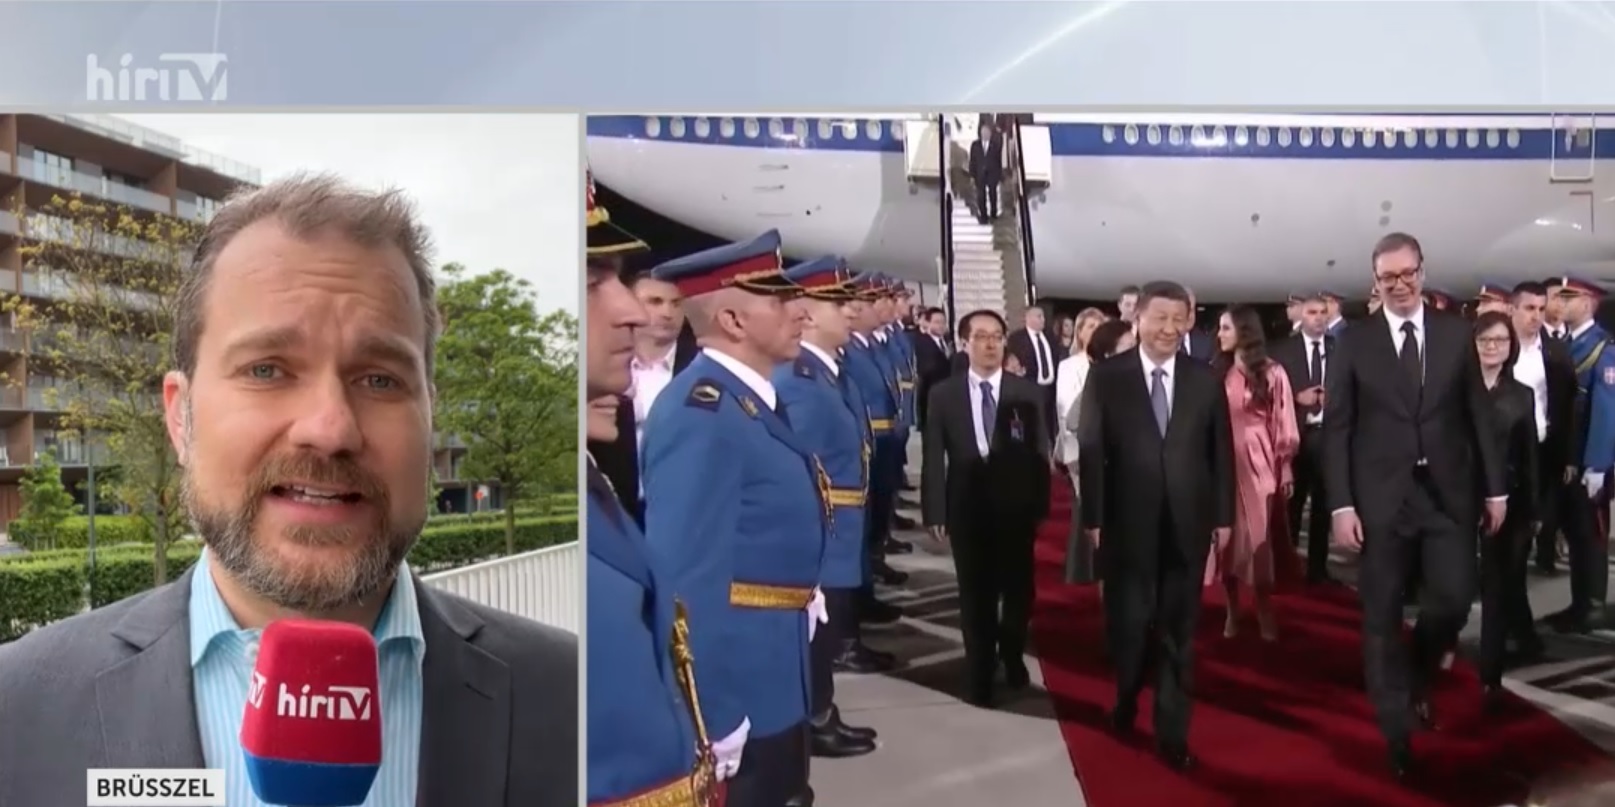 Brüsszelnek nem tetszik Hszi Csin-ping elnök belgrádi és budapesti látogatása + videó